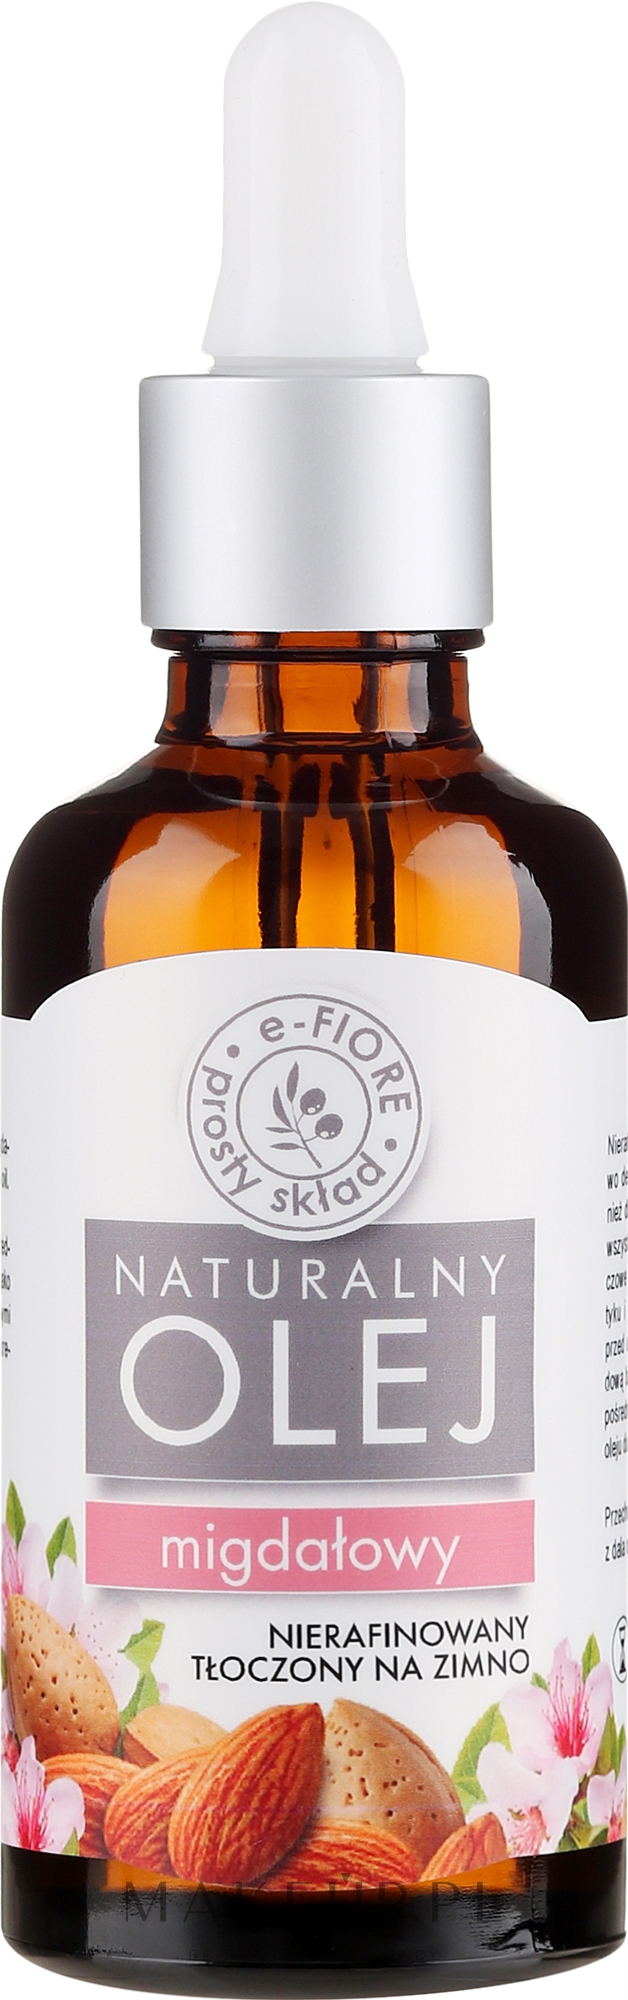 Naturalny olej migdałowy - E-Fiore — Zdjęcie 50 ml